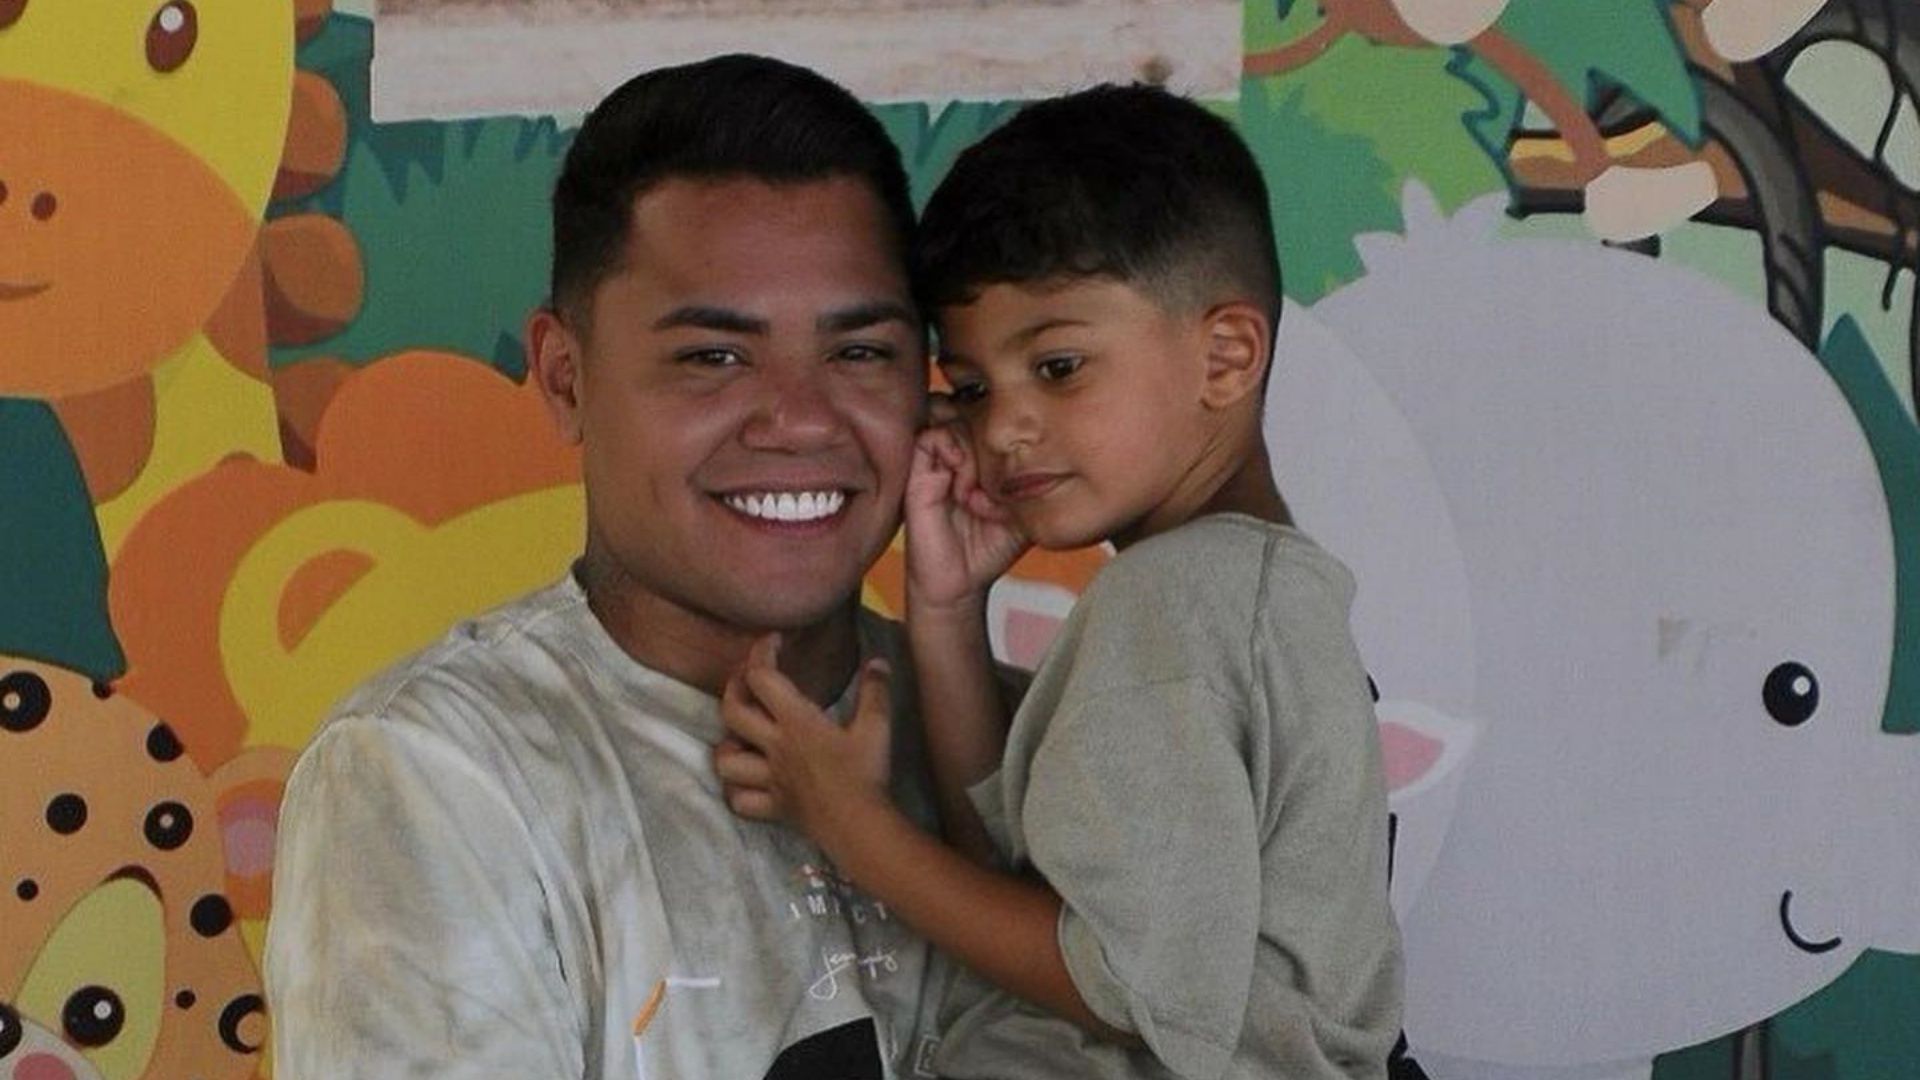 Felipe Araújo comemora aniversário do filho: "Minha vida ganhou cor"